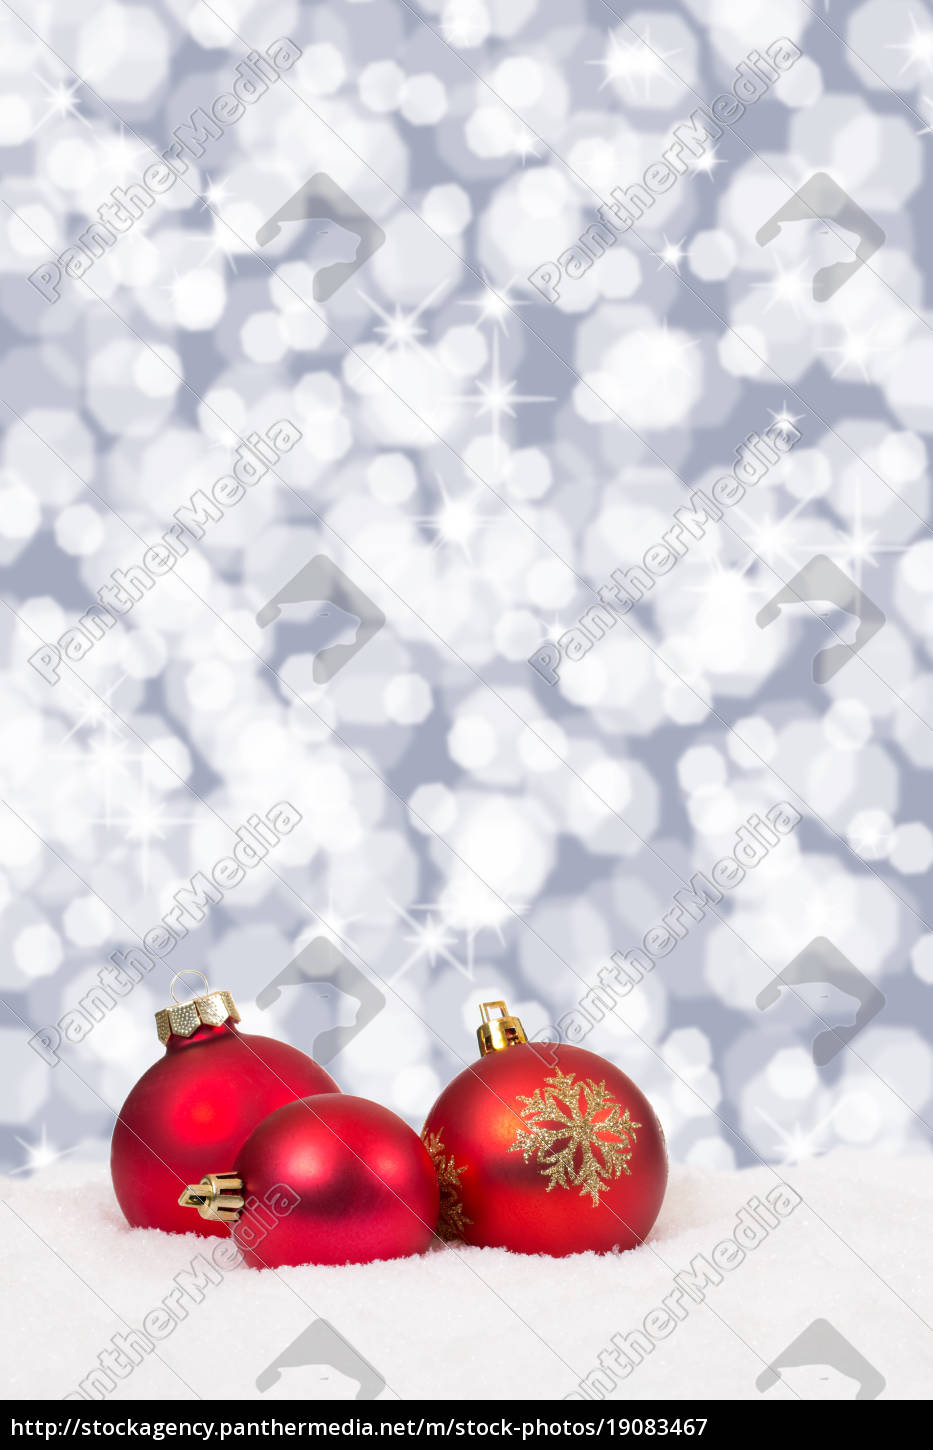 Rote Weihnachtskugeln Weihnachten Sterne Hintergrund Lizenzfreies Bild Bildagentur Panthermedia